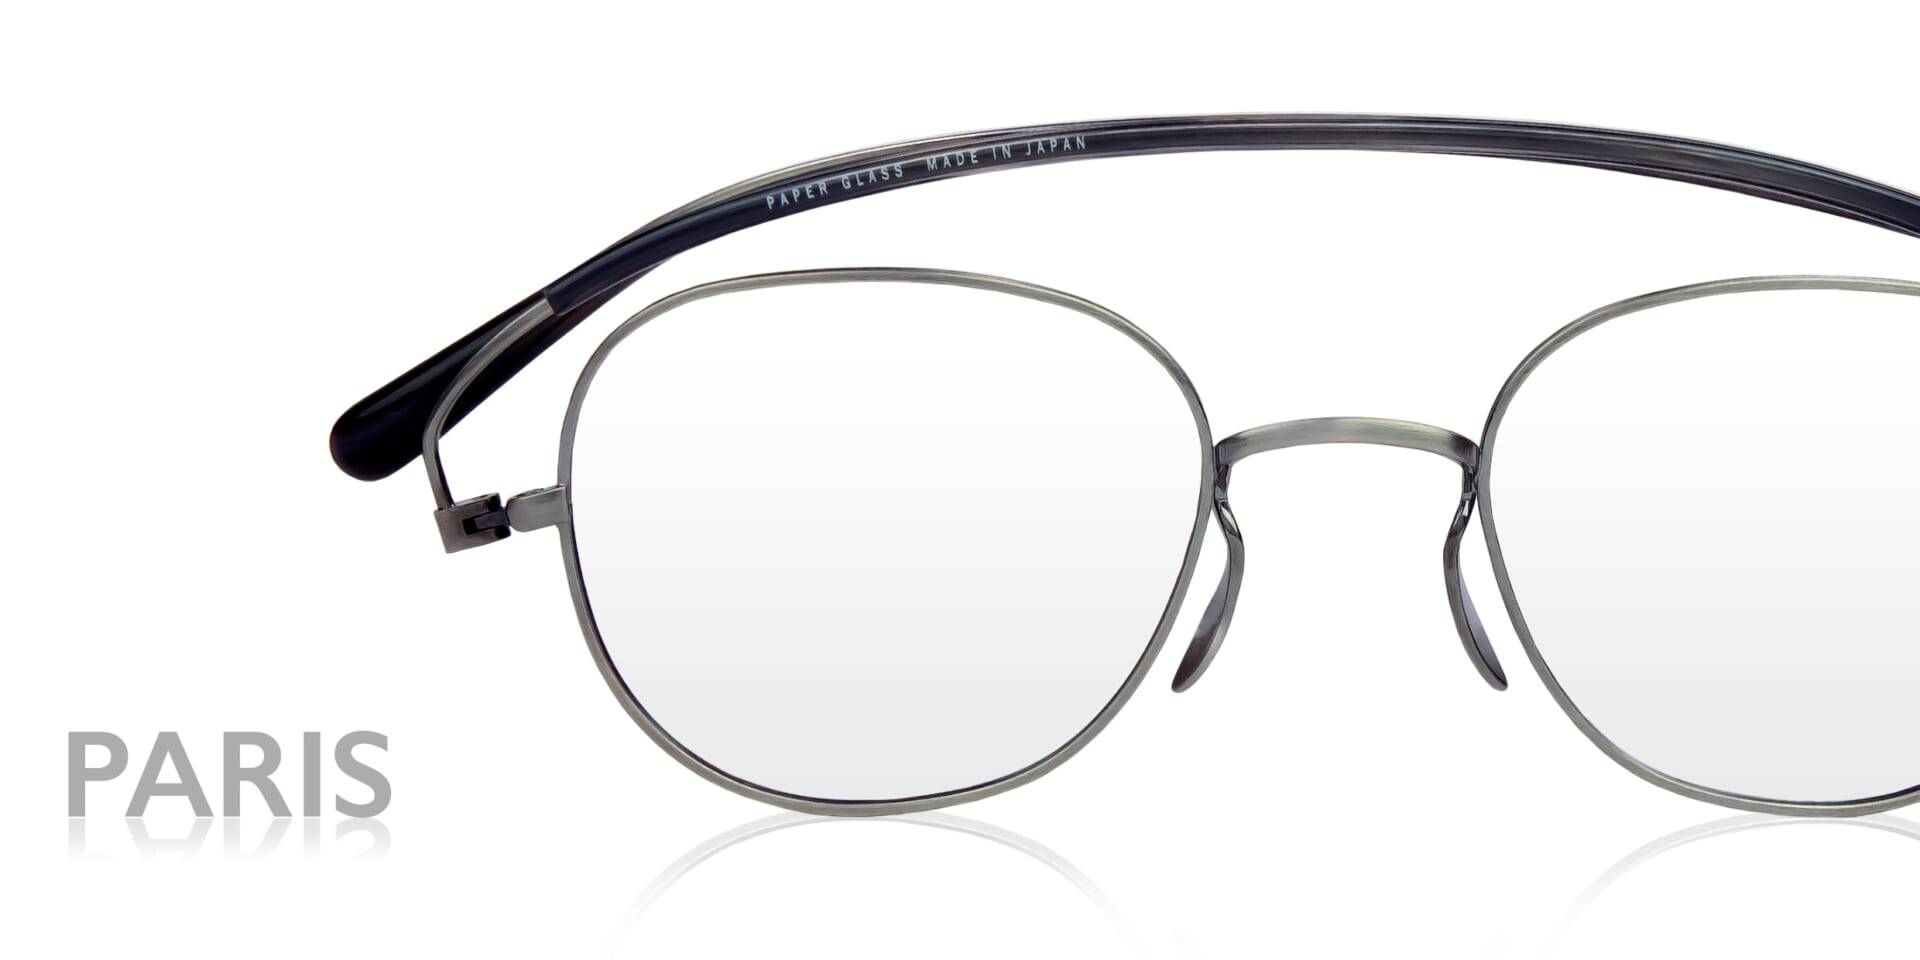 鯖江 おしゃれ 近視 遠近両用 メガネ 眼鏡 めがね ペーパーグラス 洗練されたデザイン チタン製アイウェア『NPM』登場